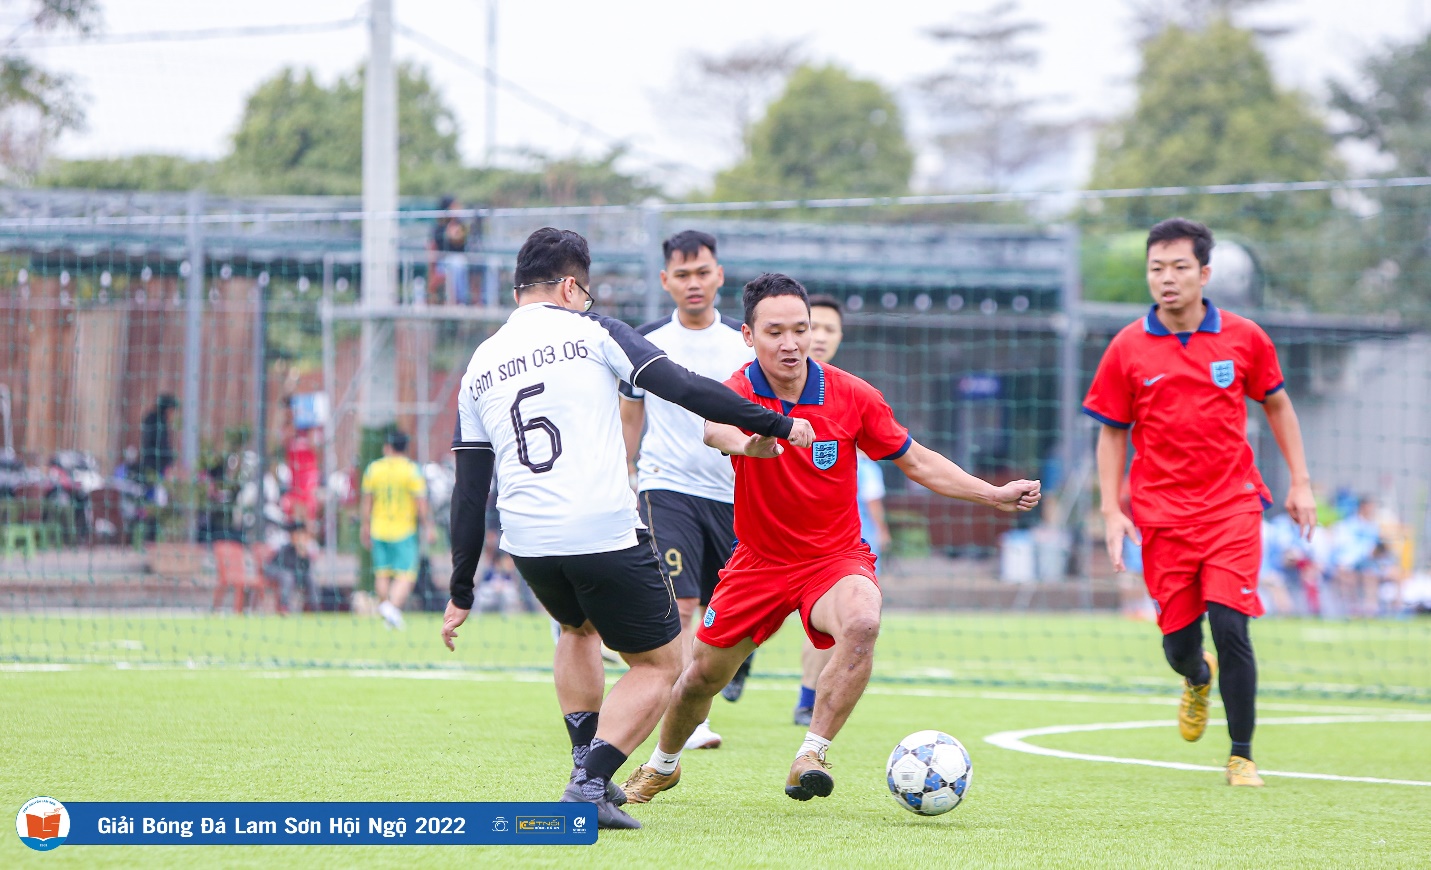 Giải bóng đá Cúp Lam Sơn hội ngộ 2022 thành công tốt đẹp - Ảnh 2.